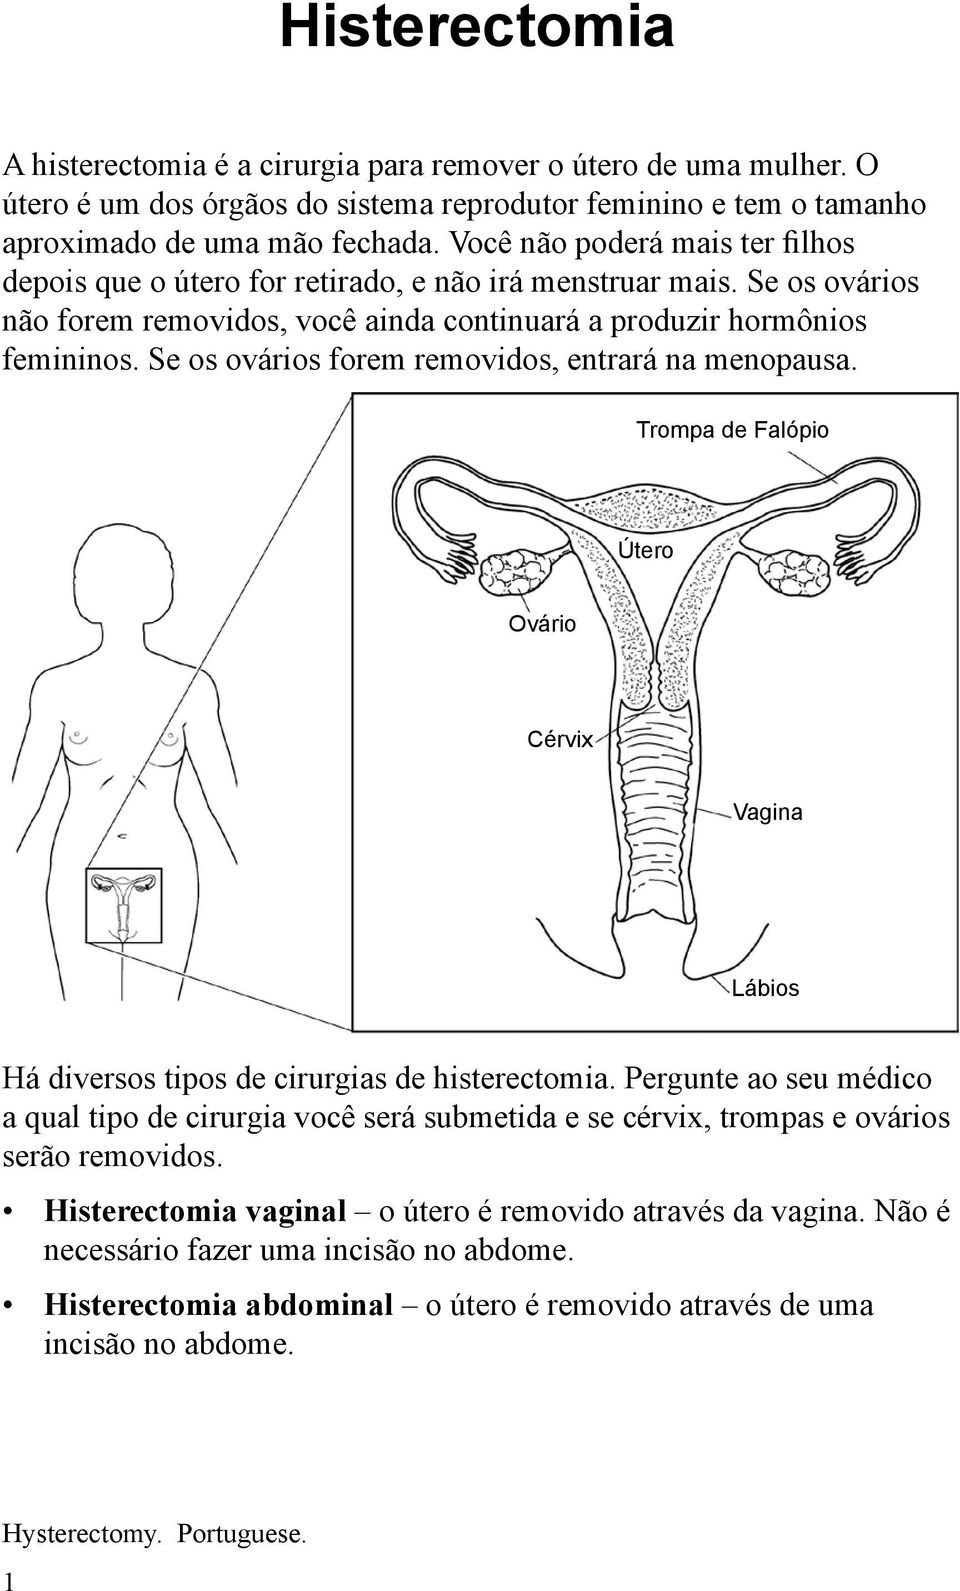 Se os ovários forem removidos, entrará na menopausa. Trompa de Falópio Útero Ovário Cérvix Vagina Lábios Há diversos tipos de cirurgias de histerectomia.